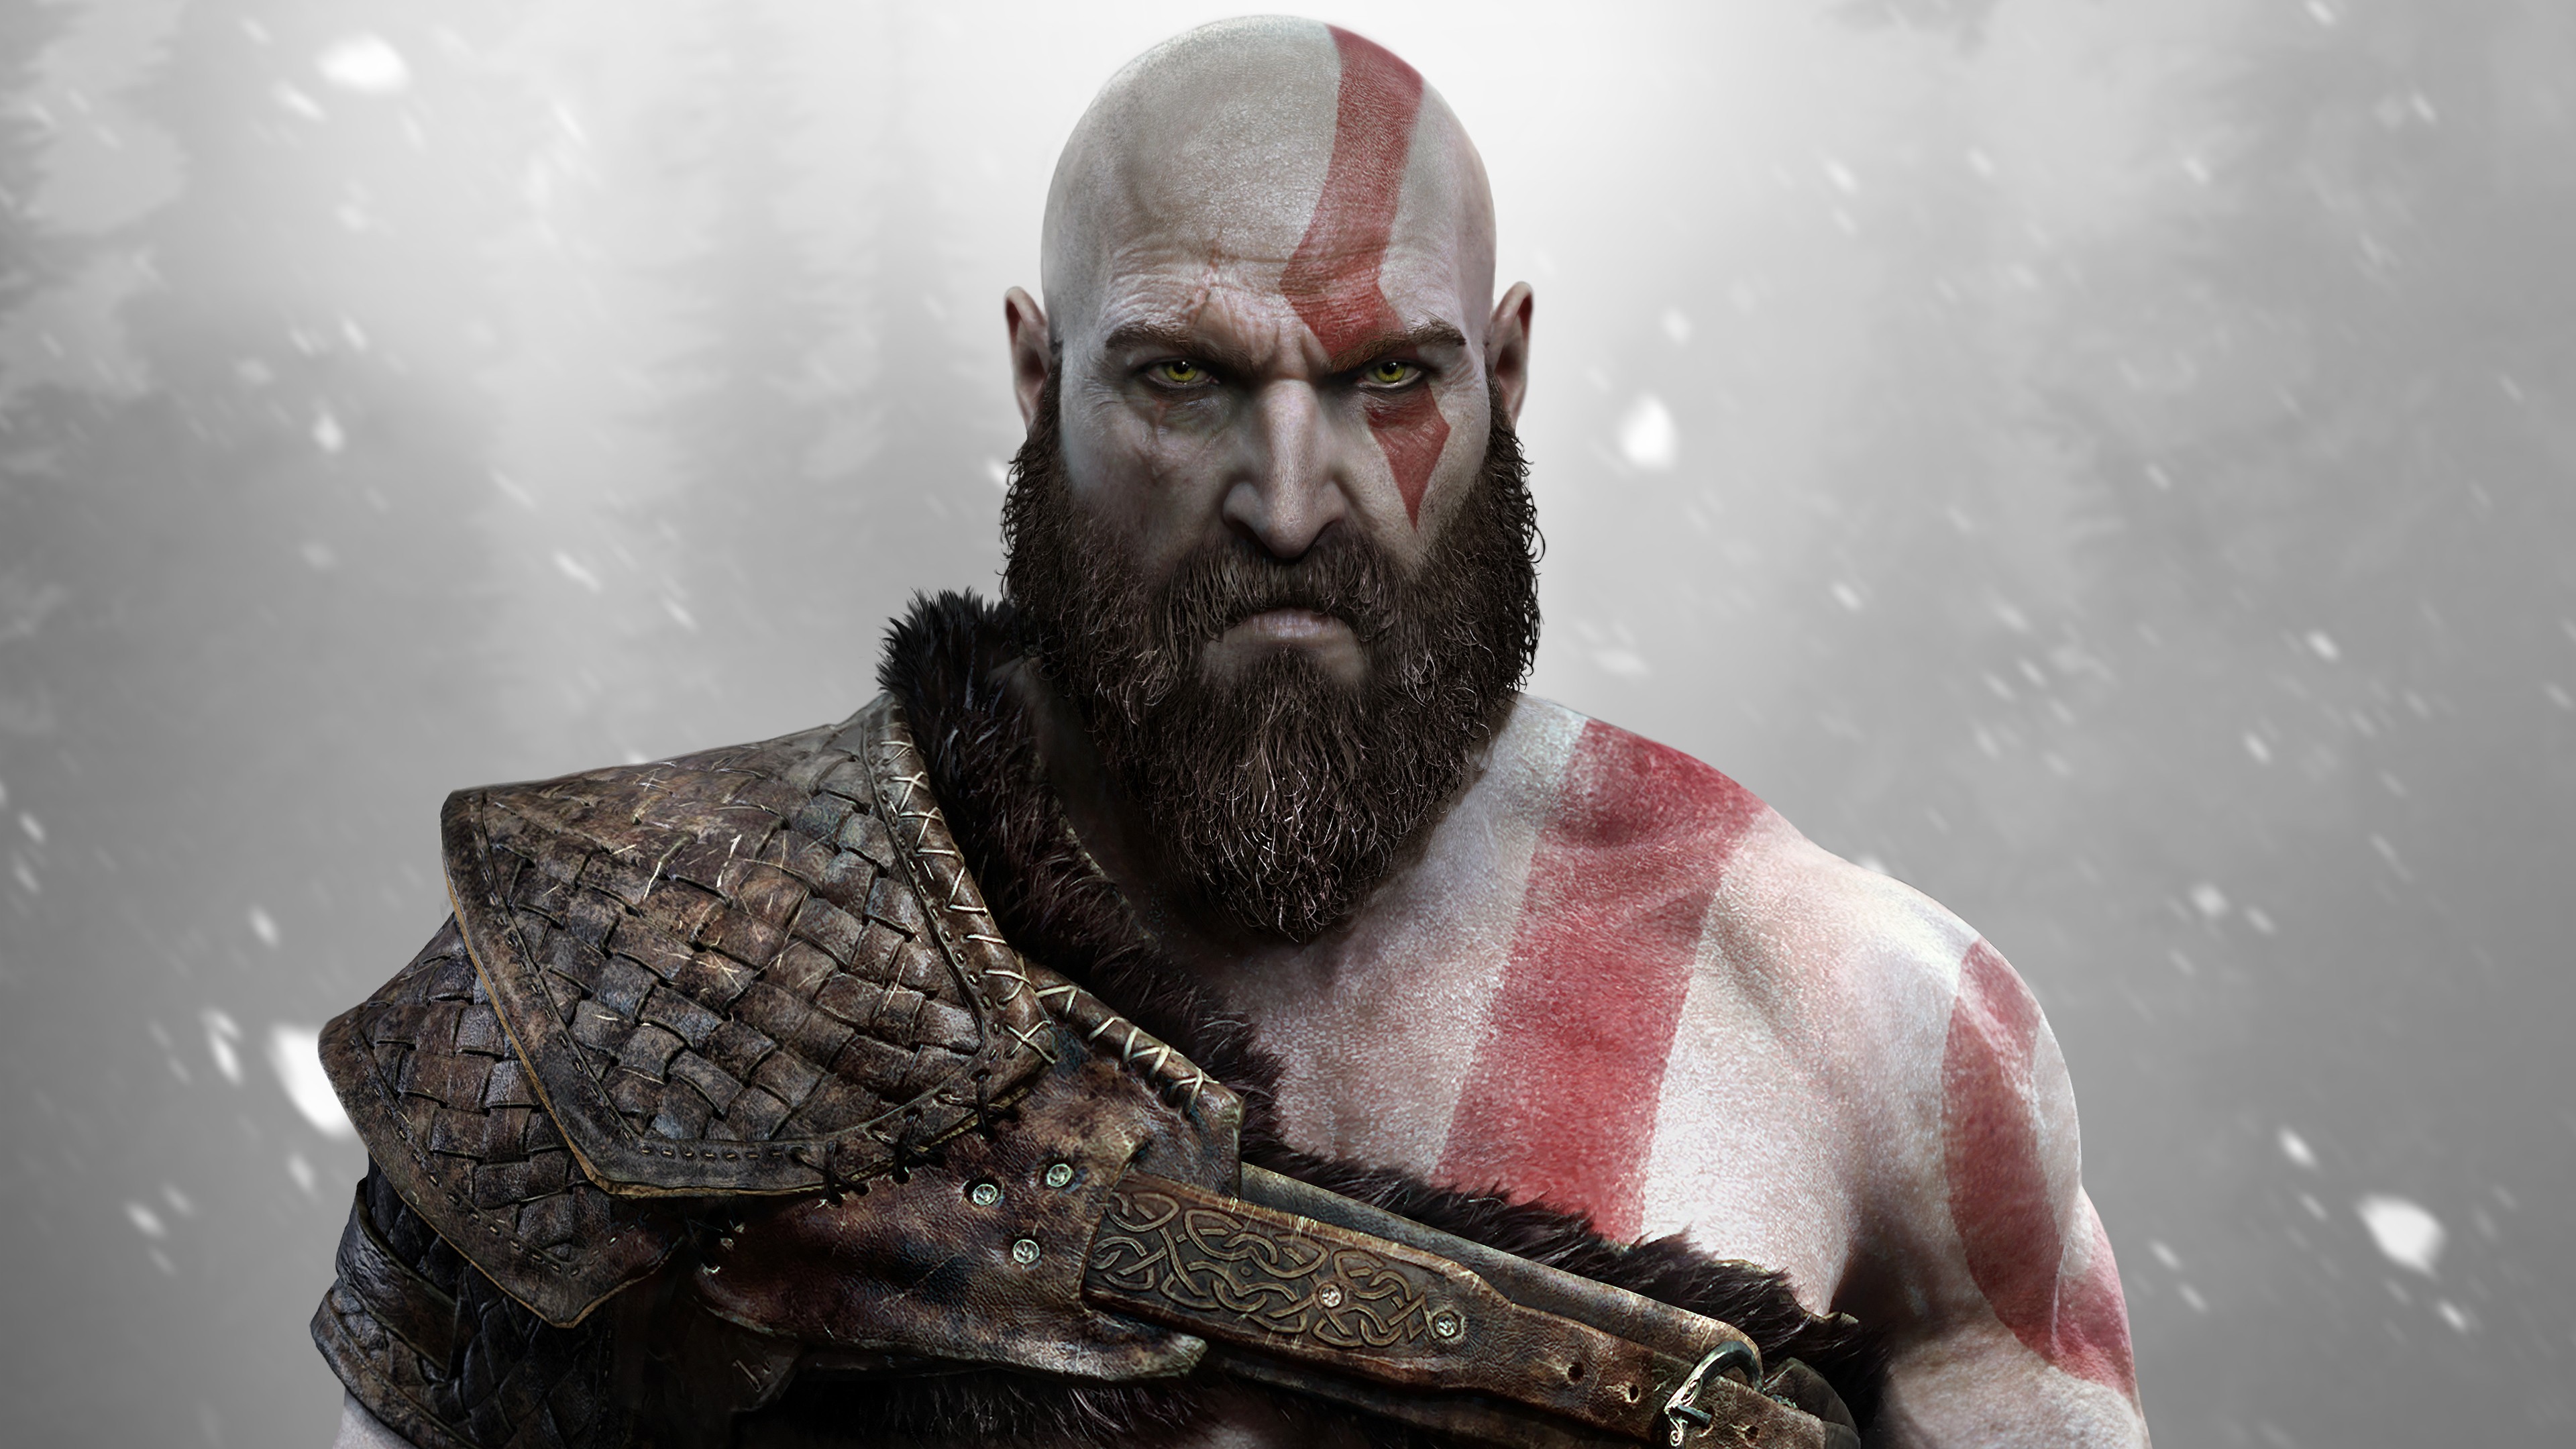 Kratos God Of War God Of War 4 Video Games Warrior Beards God Of War 2018 Frontal View 3840x2160